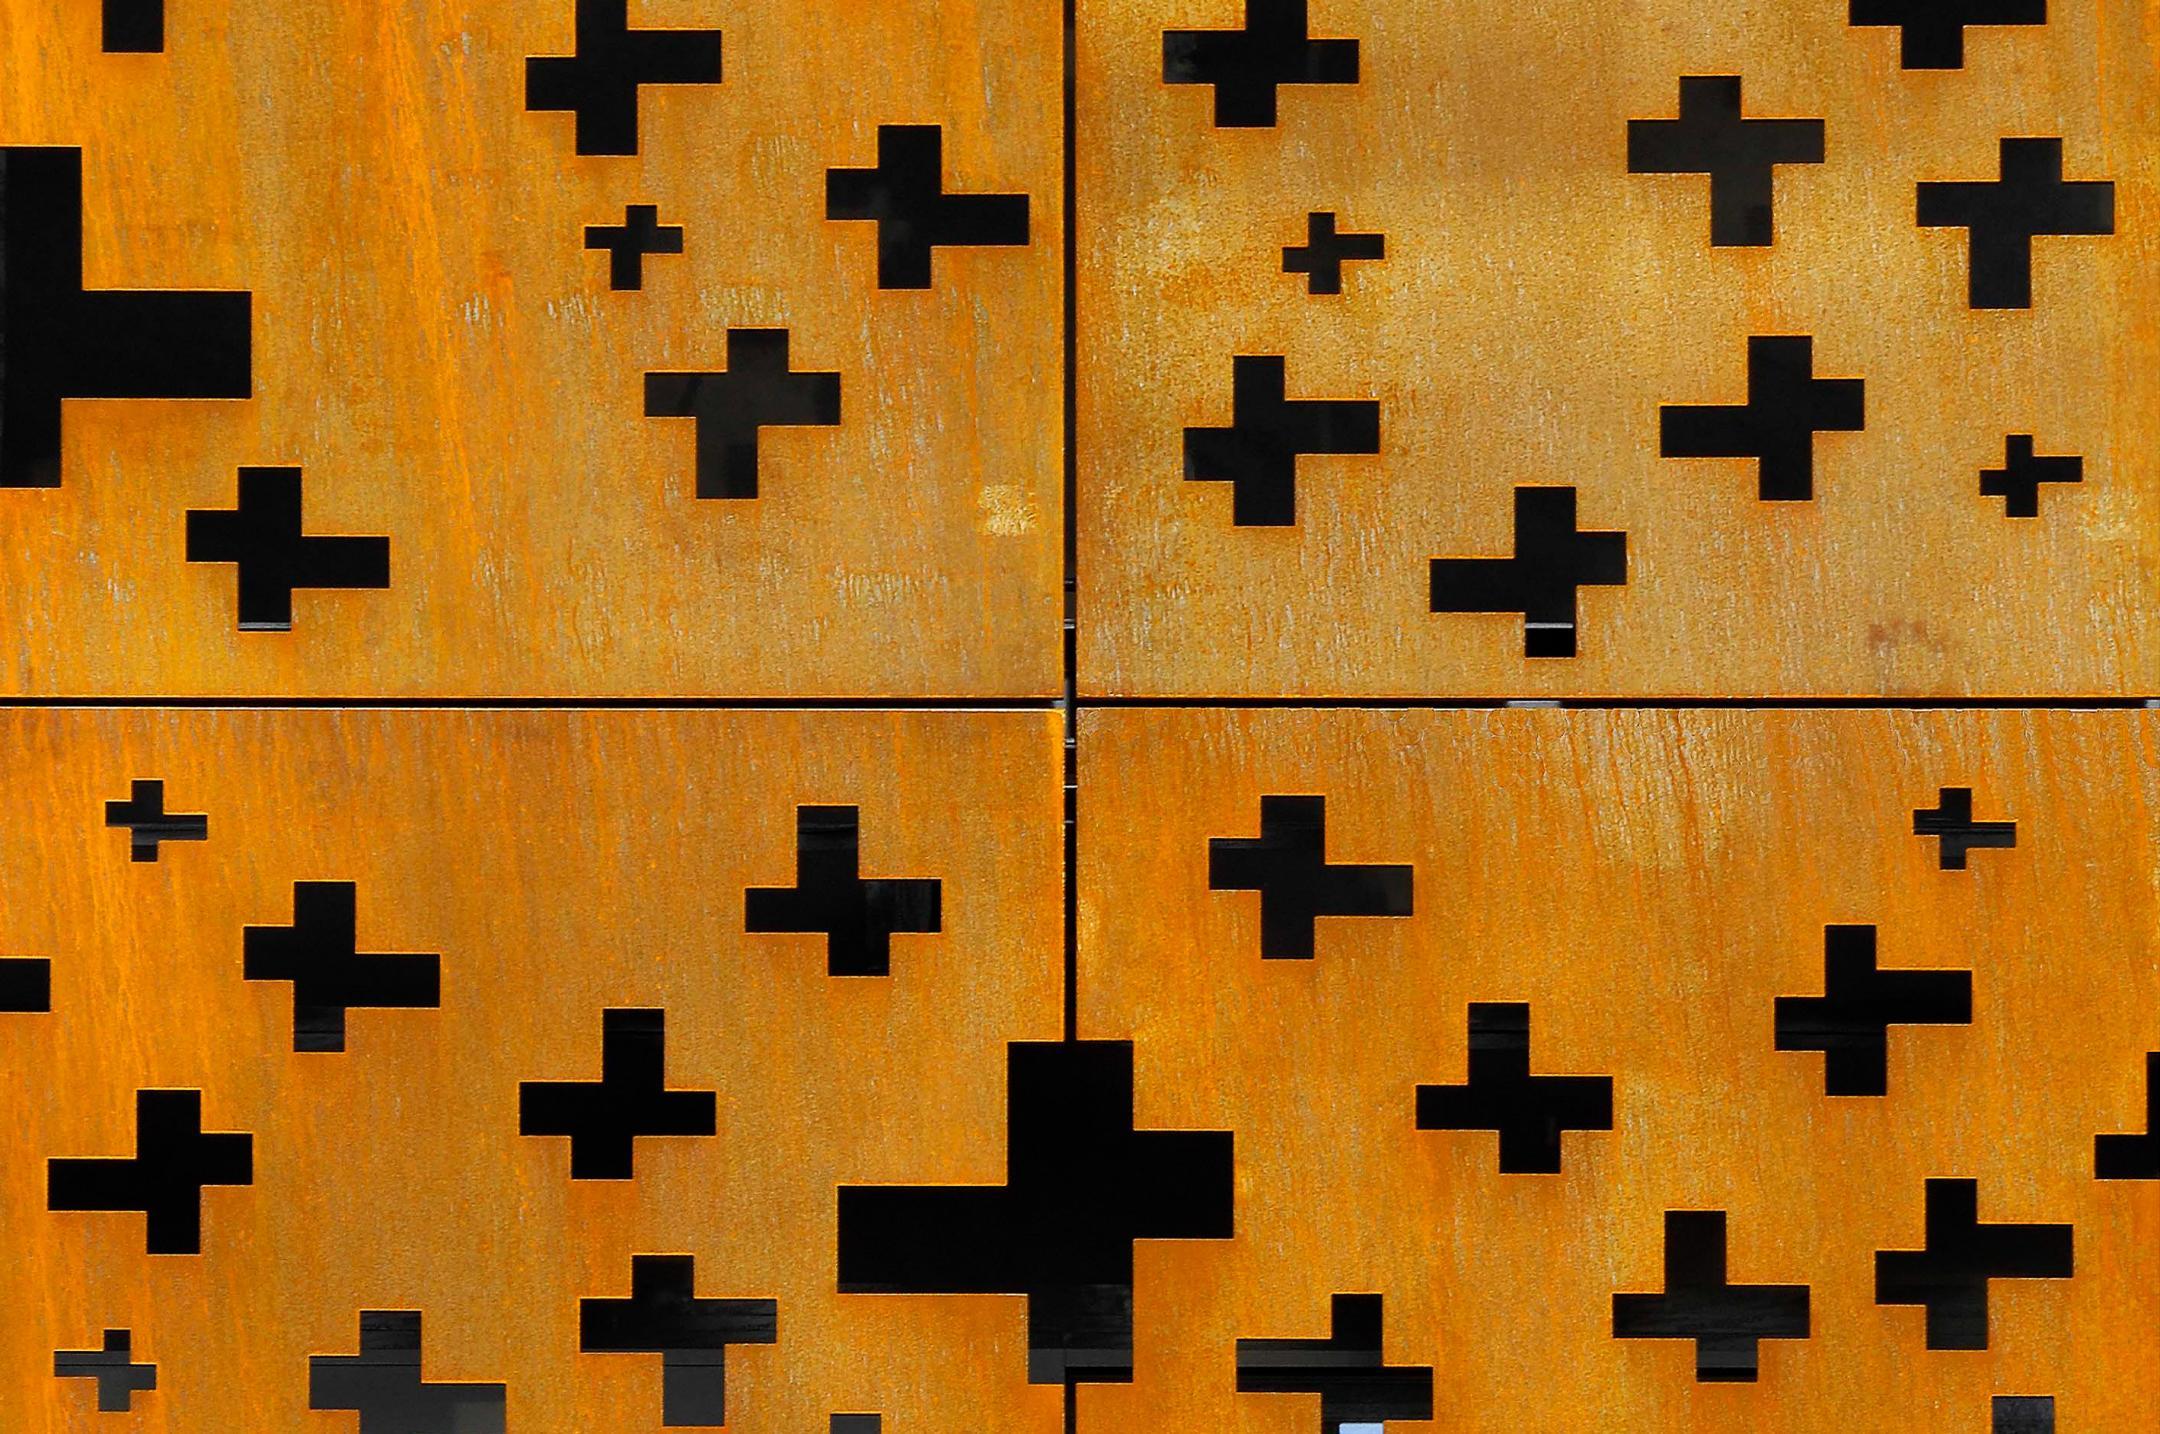 Detailansicht an vier rostige Metallplatten. In die Platten wurden Öffnungen in Form von Kreuzen eingebracht.